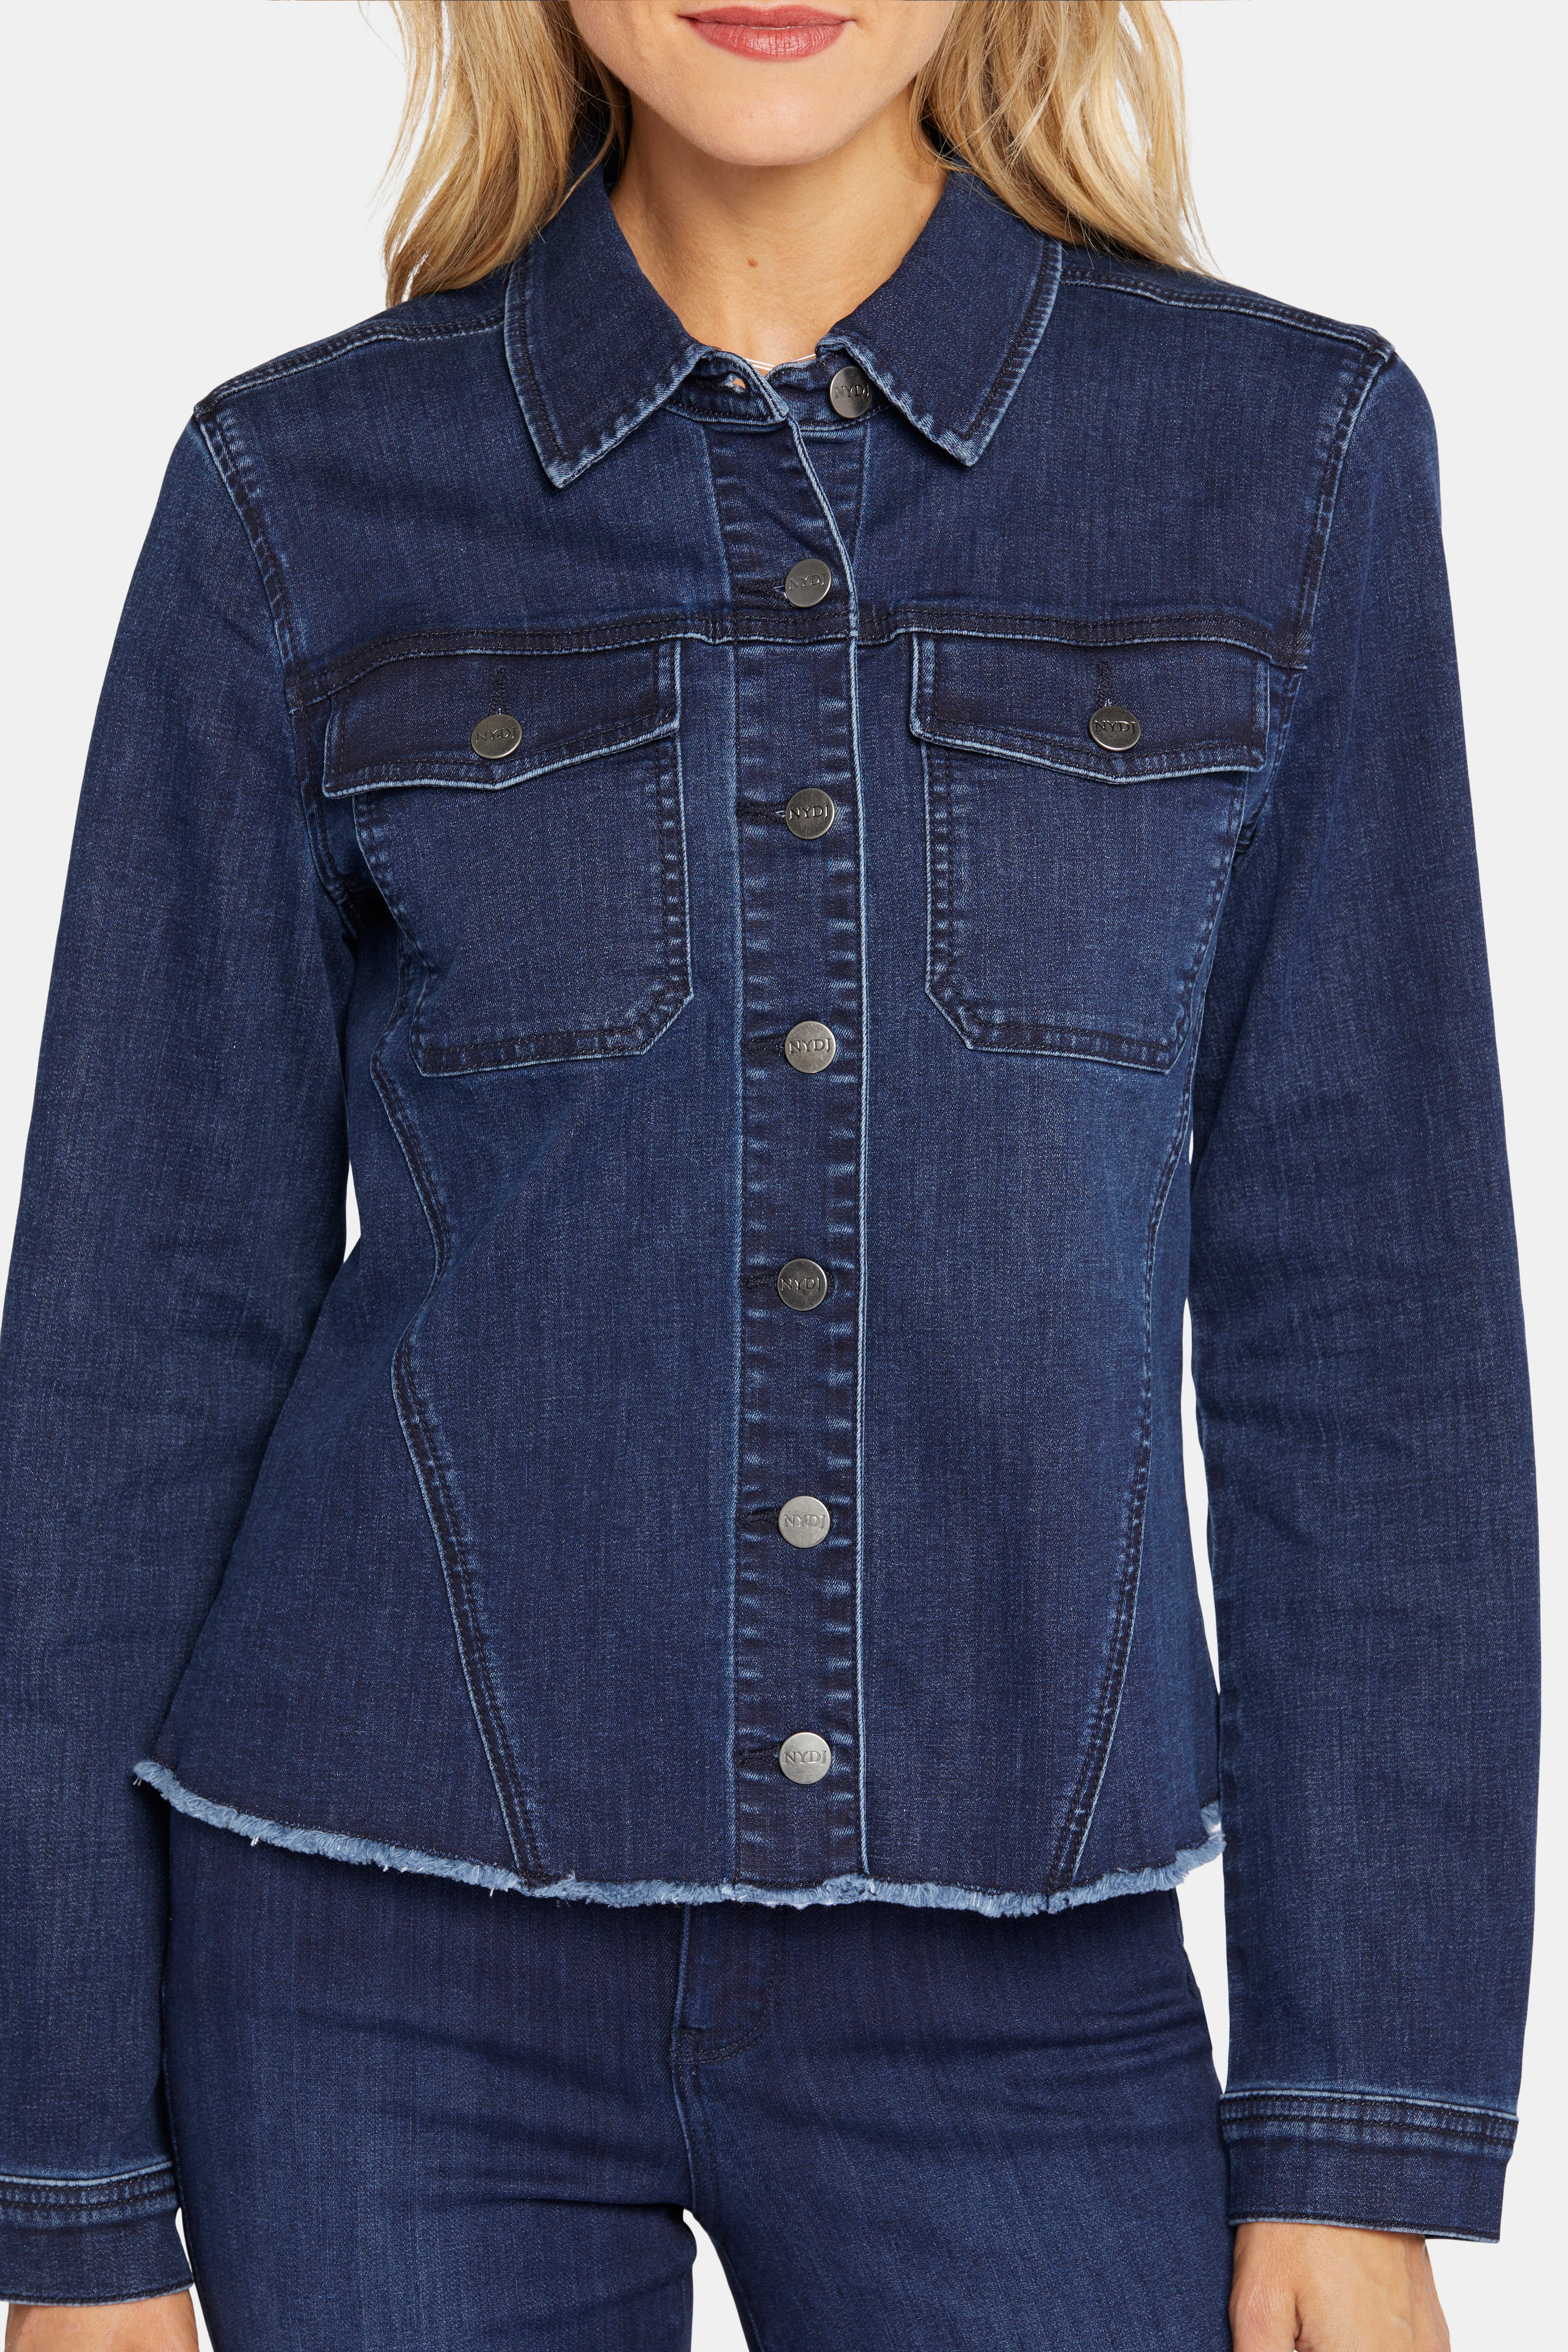 Clothing & Shoes - Jackets & Coats - Denim & Shirt Jackets - NYDJ